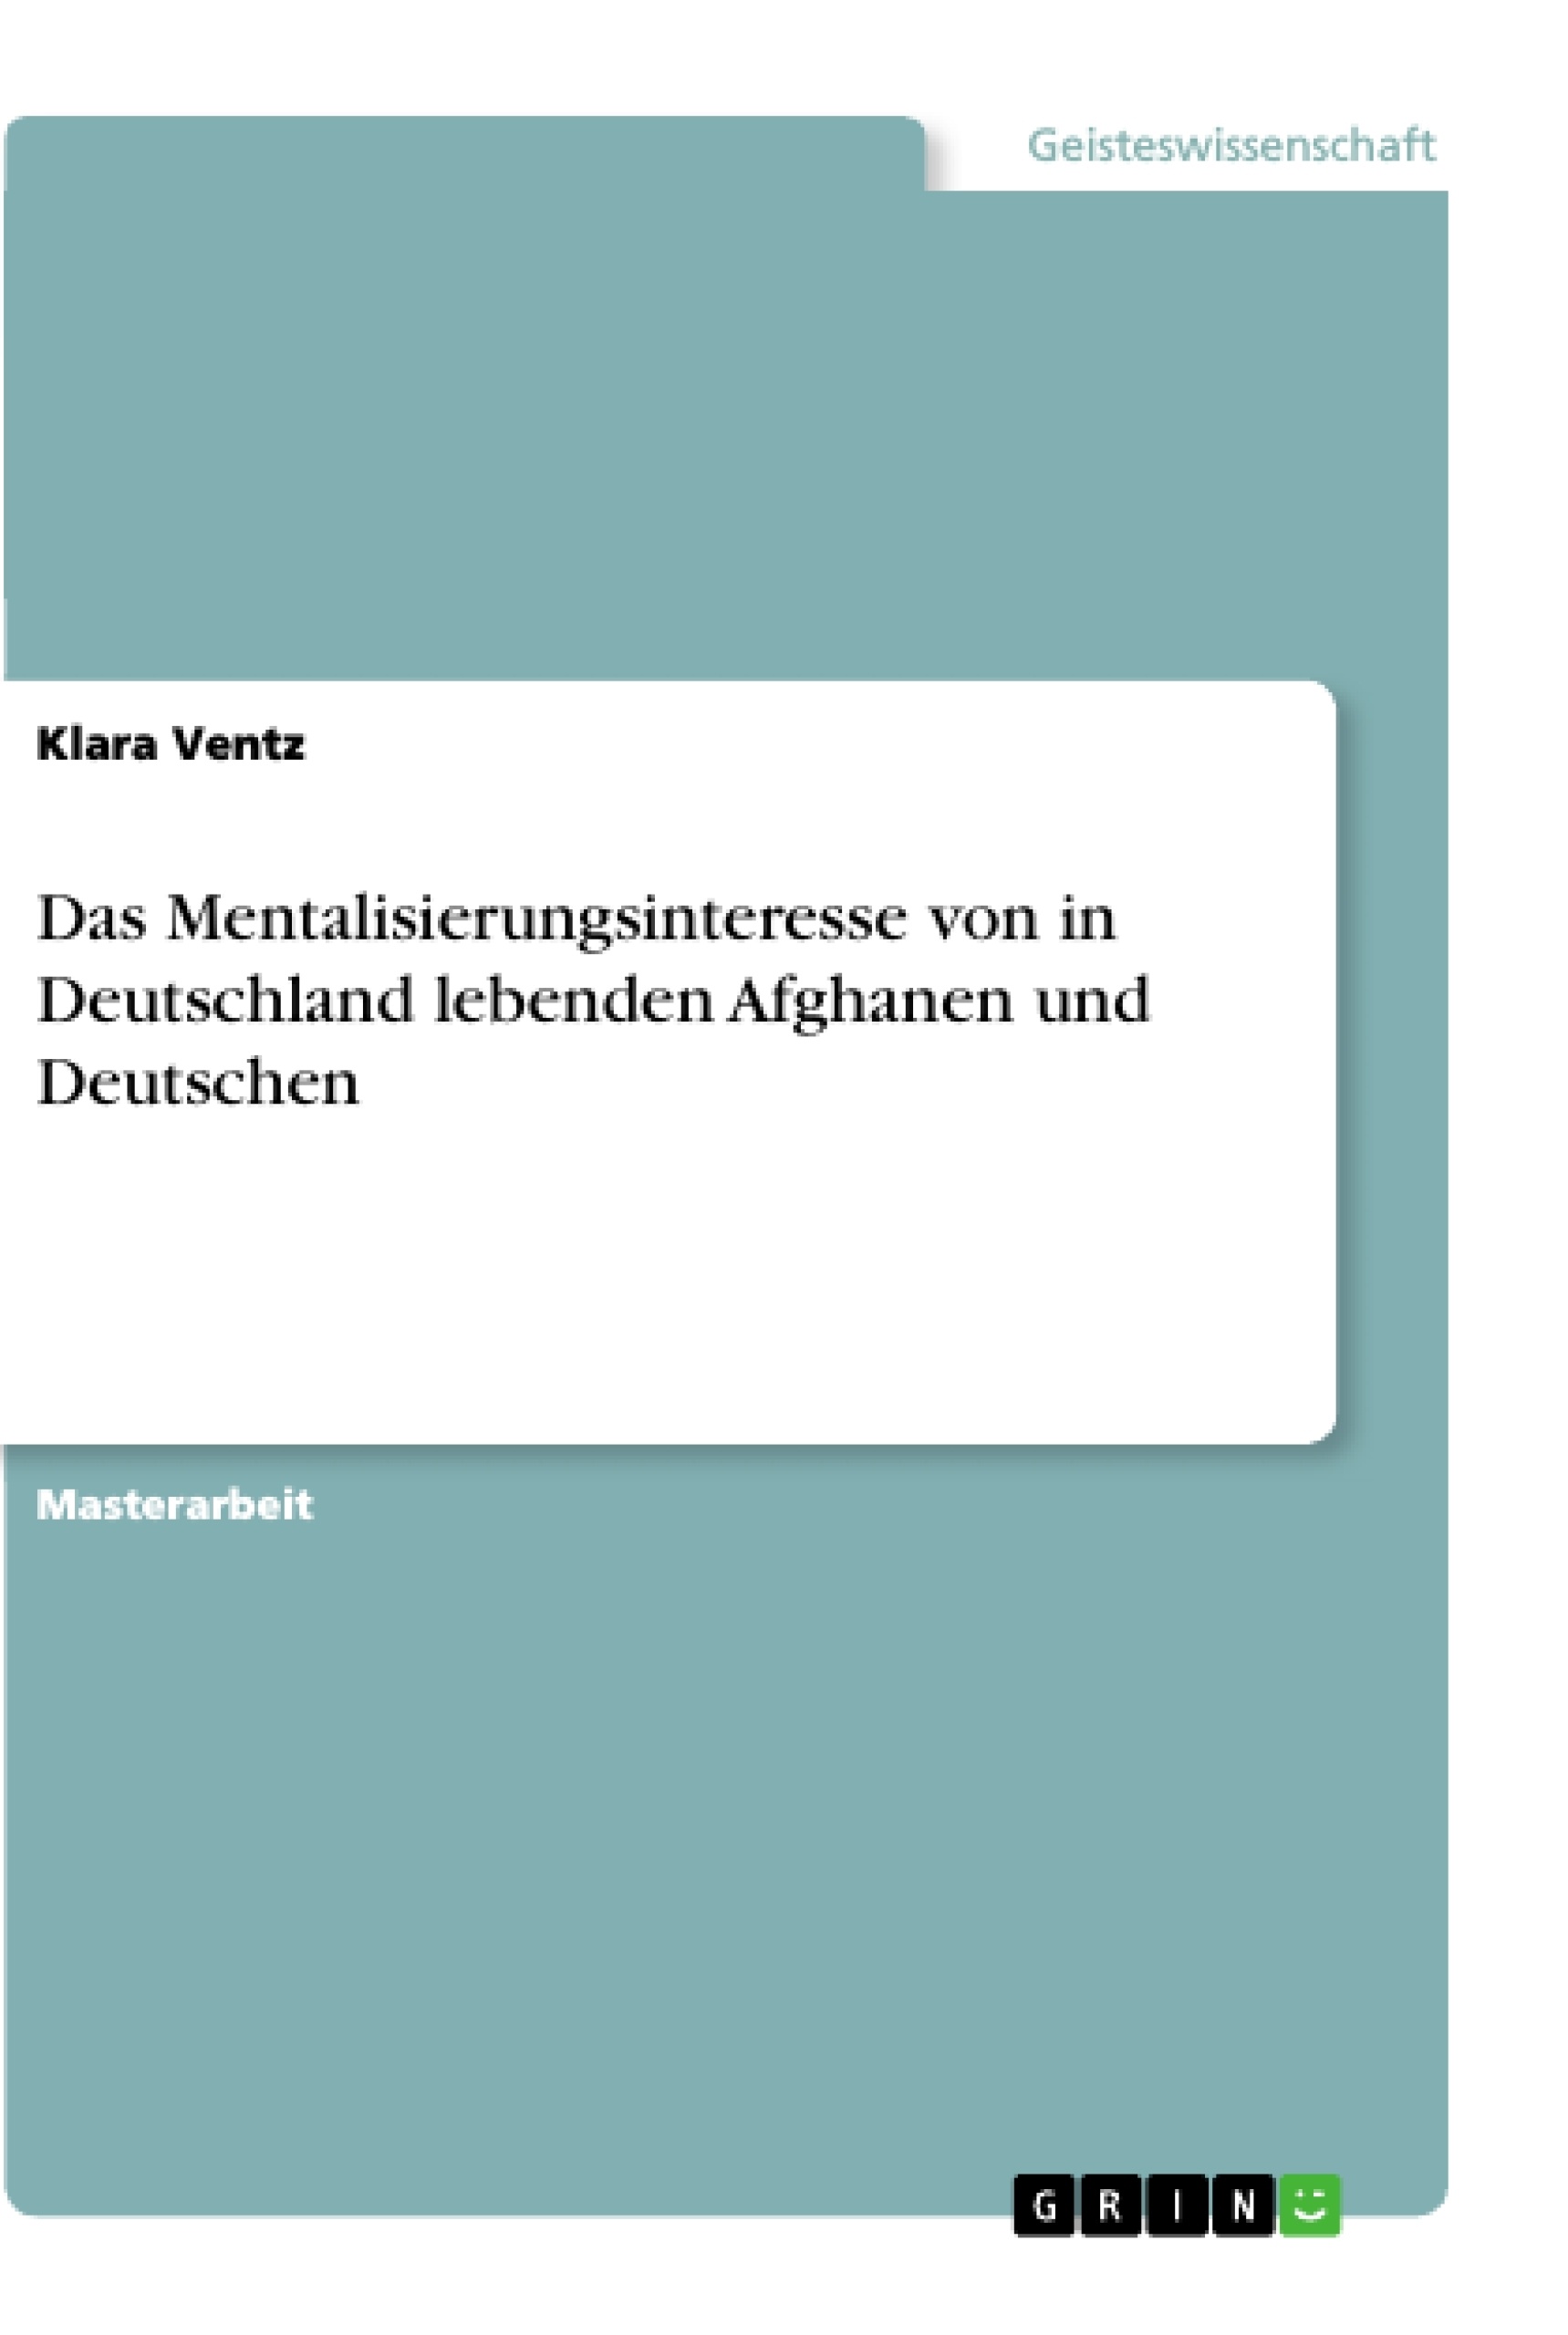 Título: Das Mentalisierungsinteresse von in Deutschland lebenden Afghanen und Deutschen